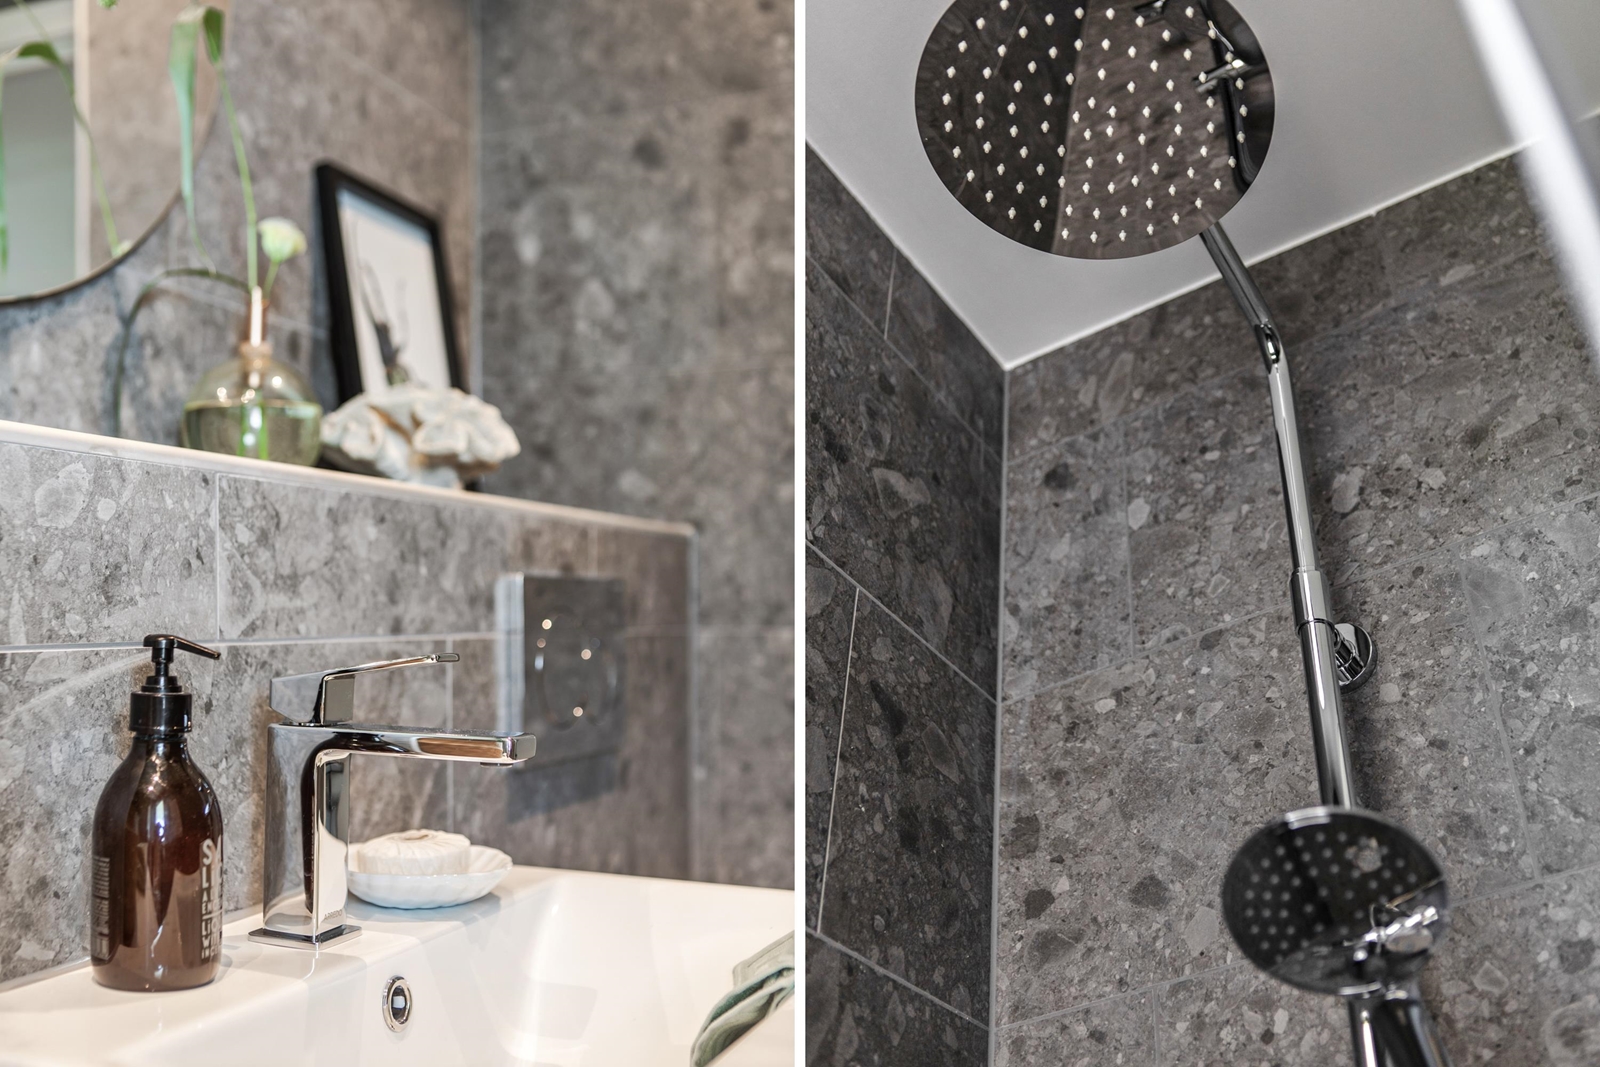 Dubbel bild som visar ett badrum med grå marmordetaljer: till vänster en handfat med modern kran och spegel, till höger en närbild av en duschmunstycke.